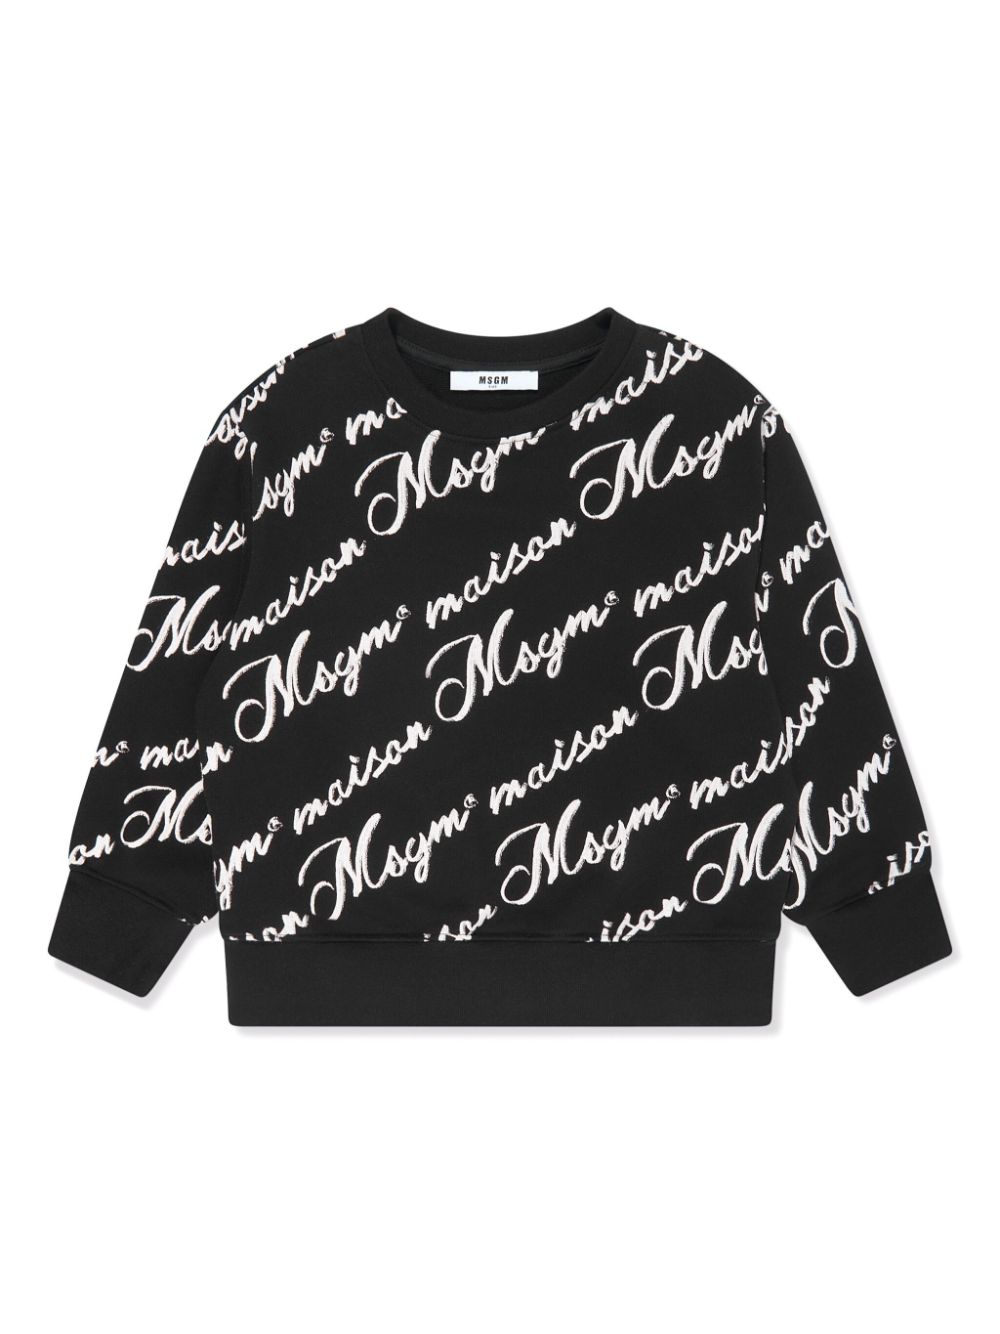 MSGM Kids logo-print cotton sweatshirt - Black von MSGM Kids